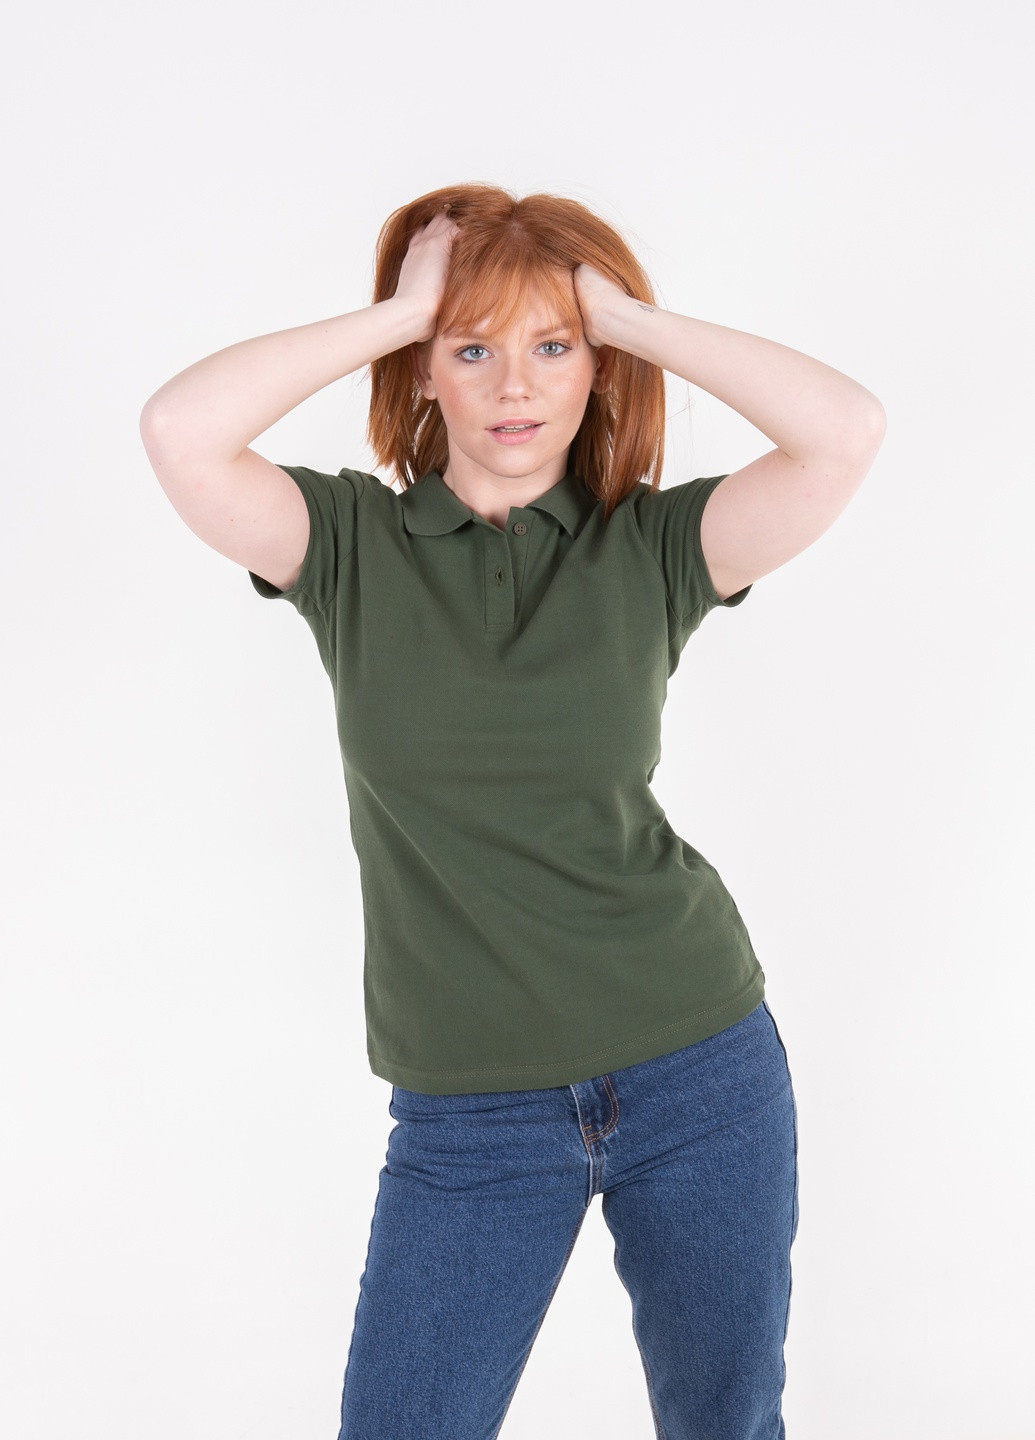 Оливковая (хаки) женская футболка-футболка поло женская TvoePolo однотонная